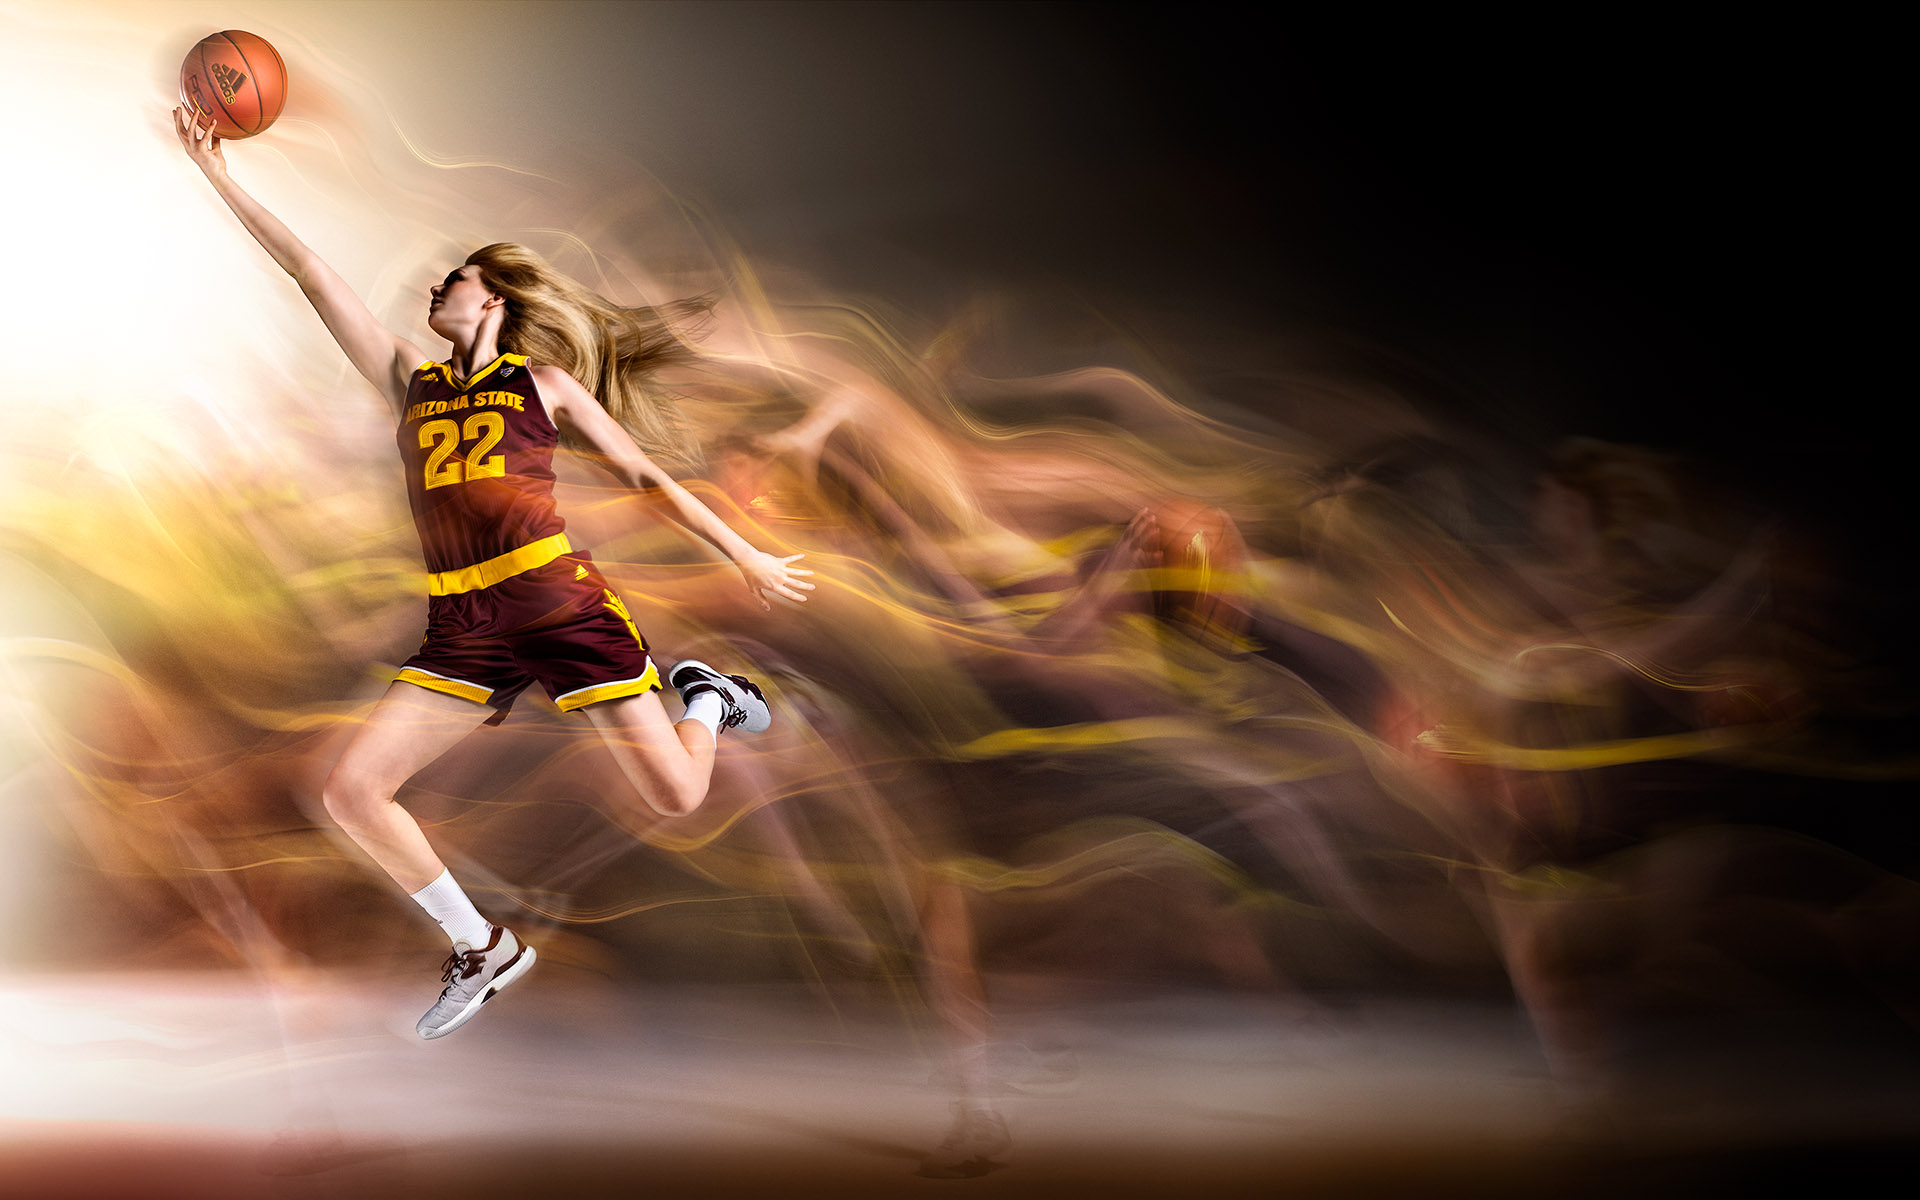 ASU 2016 Basketball ©Blair Bunting